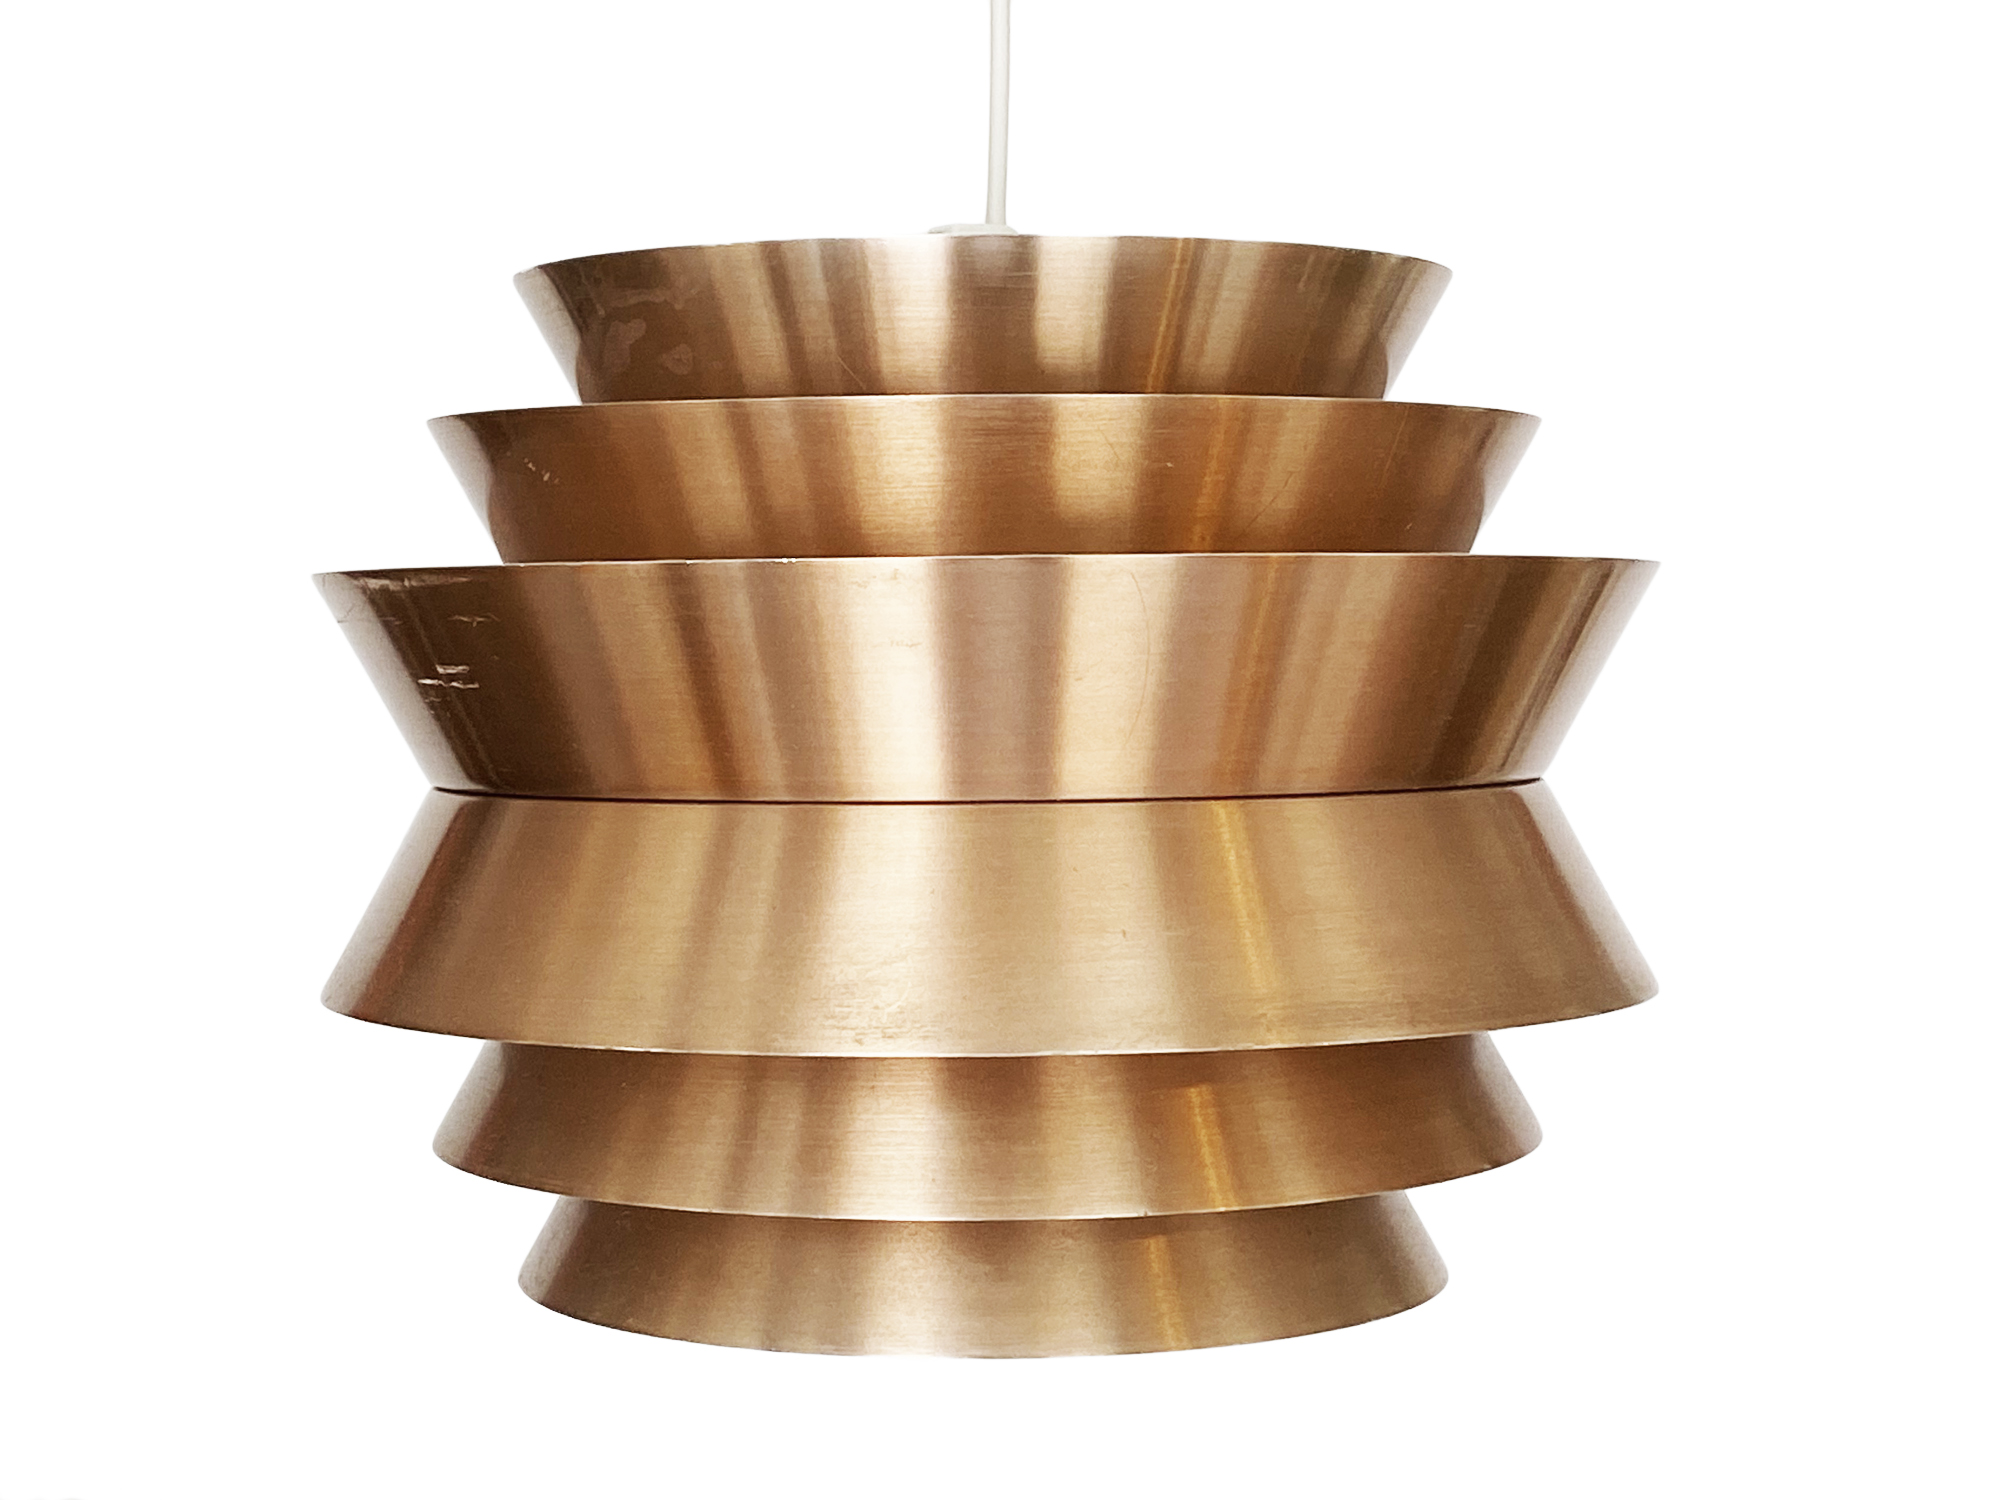 Pendant light "Trava" in copper aluminium by Carl Thore for Granhaga Metallindustri. Sweden 1960s.